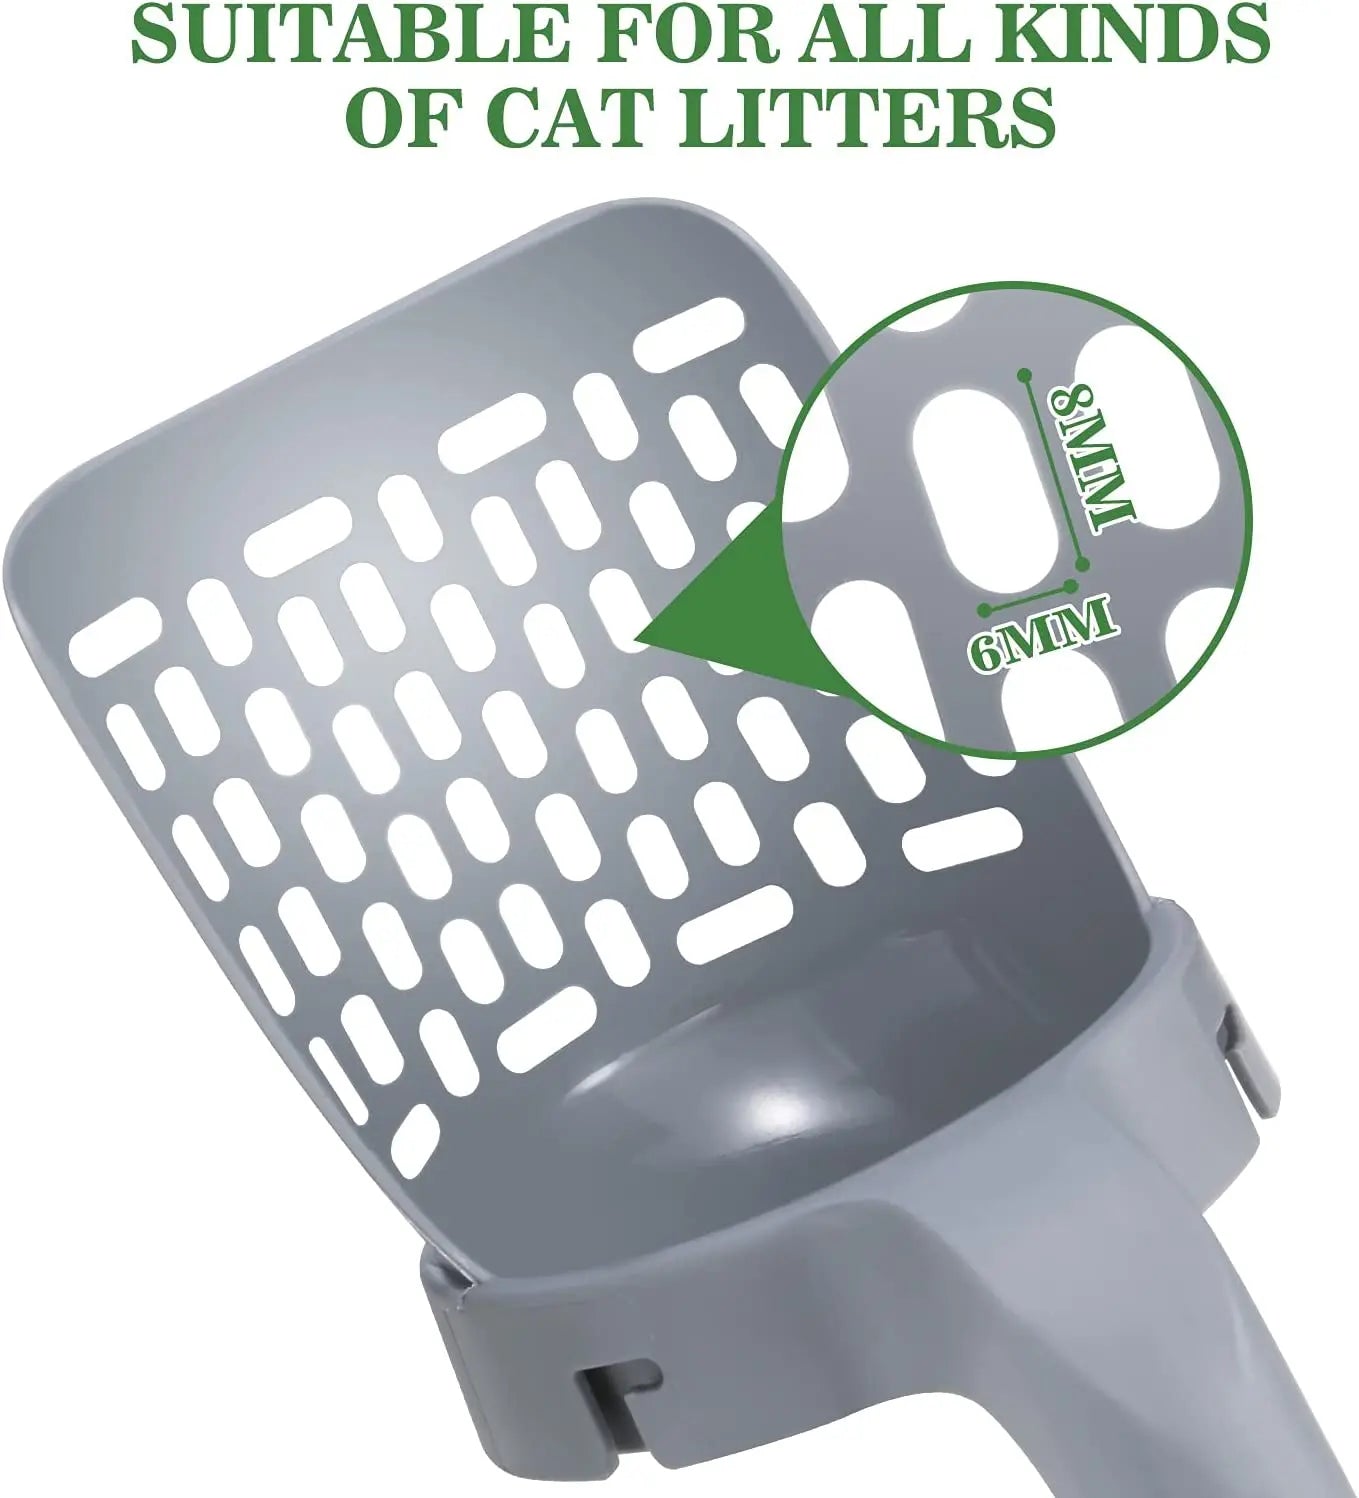 Self-Cleaning Cat Litter Shovel